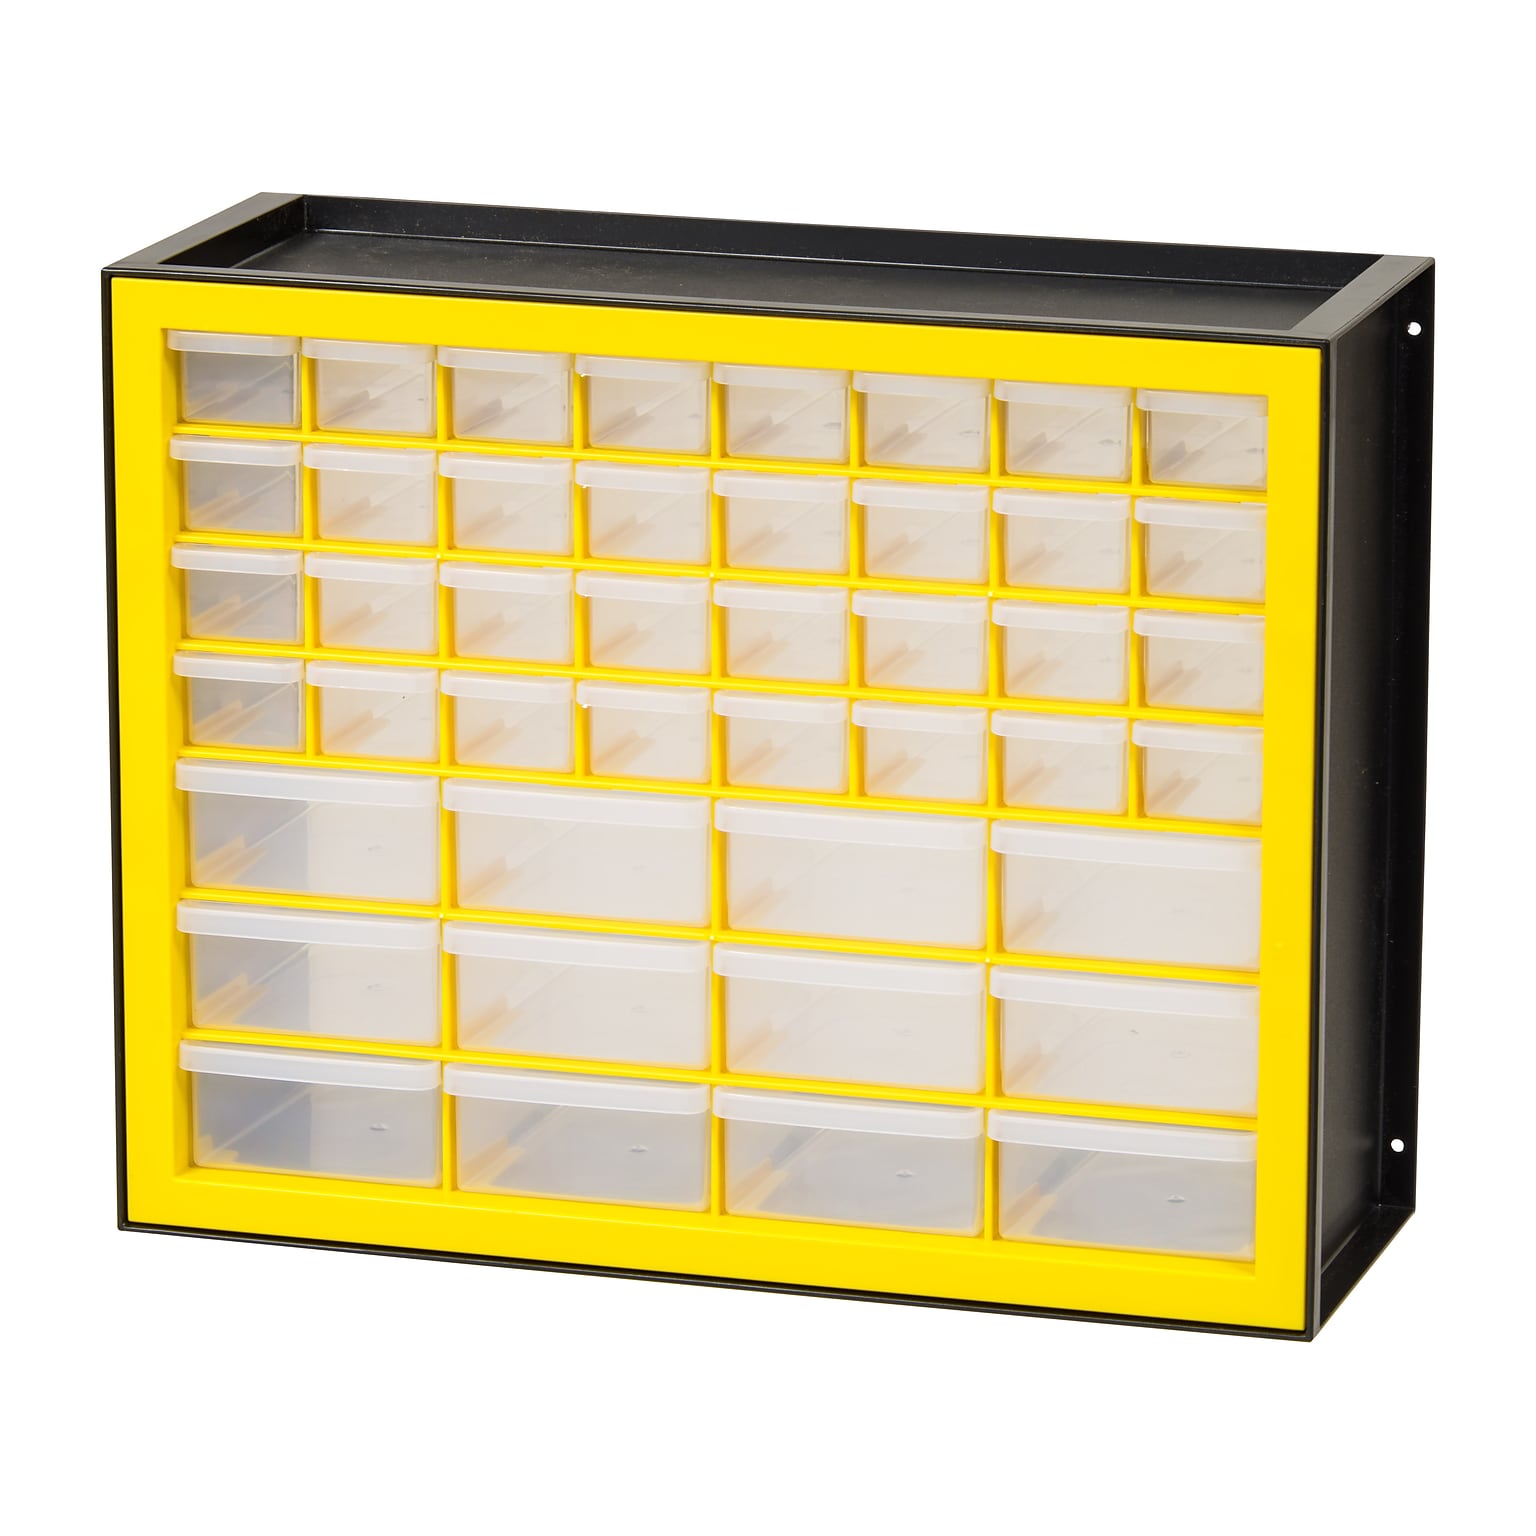 Iris 44-Drawer Desktop Storage Cabinet, Black/Yellow (500176)